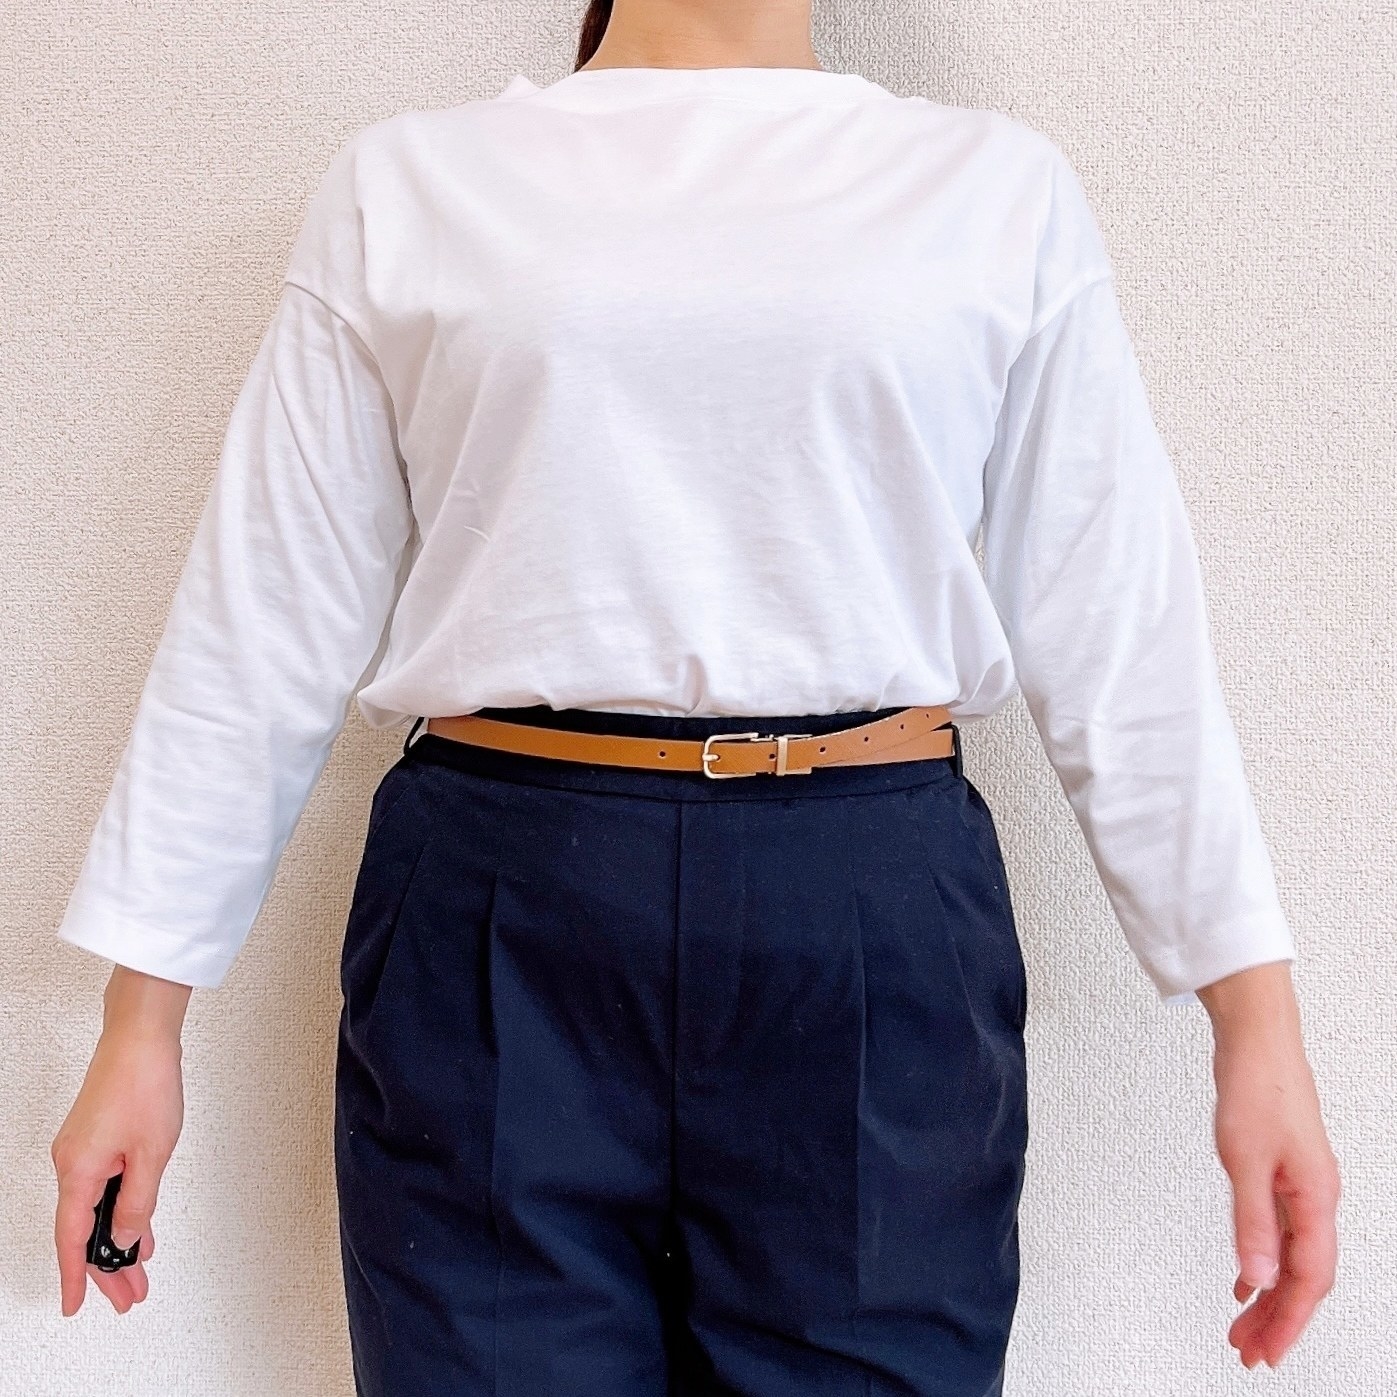 無印良品のオススメレディースファッション「天竺編みボートネック七分袖Tシャツ」のコーディネート